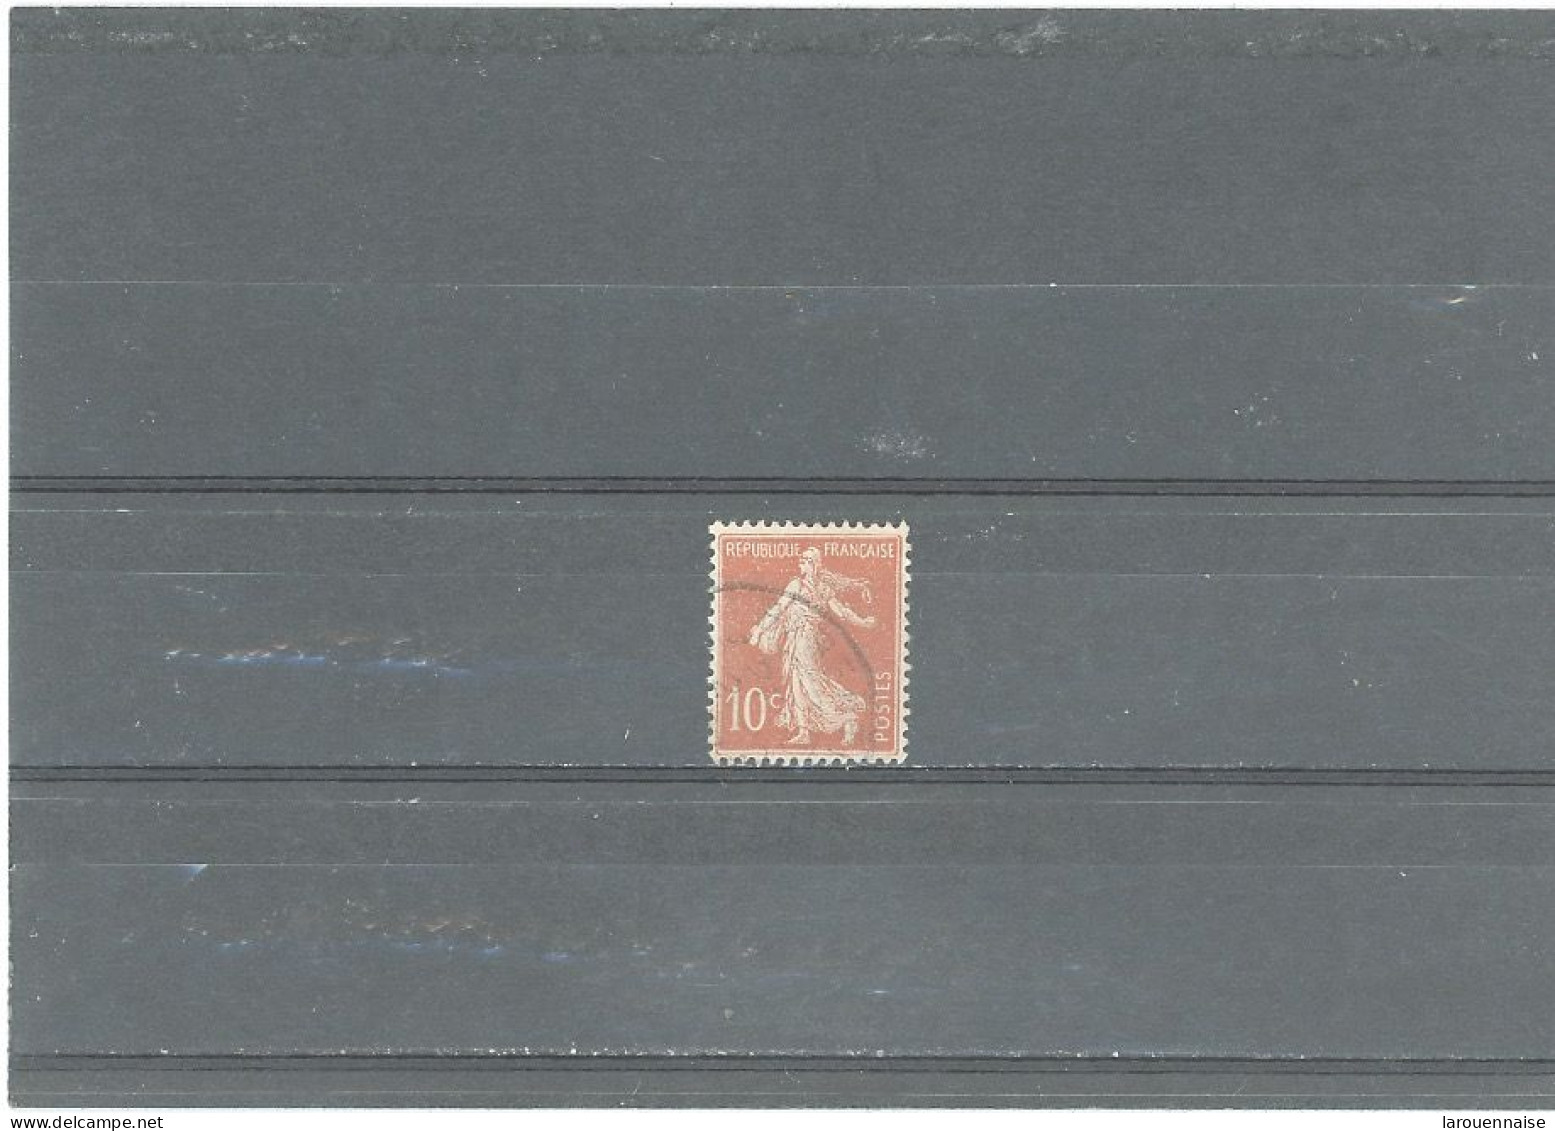 VARIÉTÉS -N°135 -Obl SEMEUSE CAMÉE -10c ROUGE -CHIFFRE MAIGRE  -ANNEAU LUNE (SOUS LA CHEVEULURE) - Used Stamps